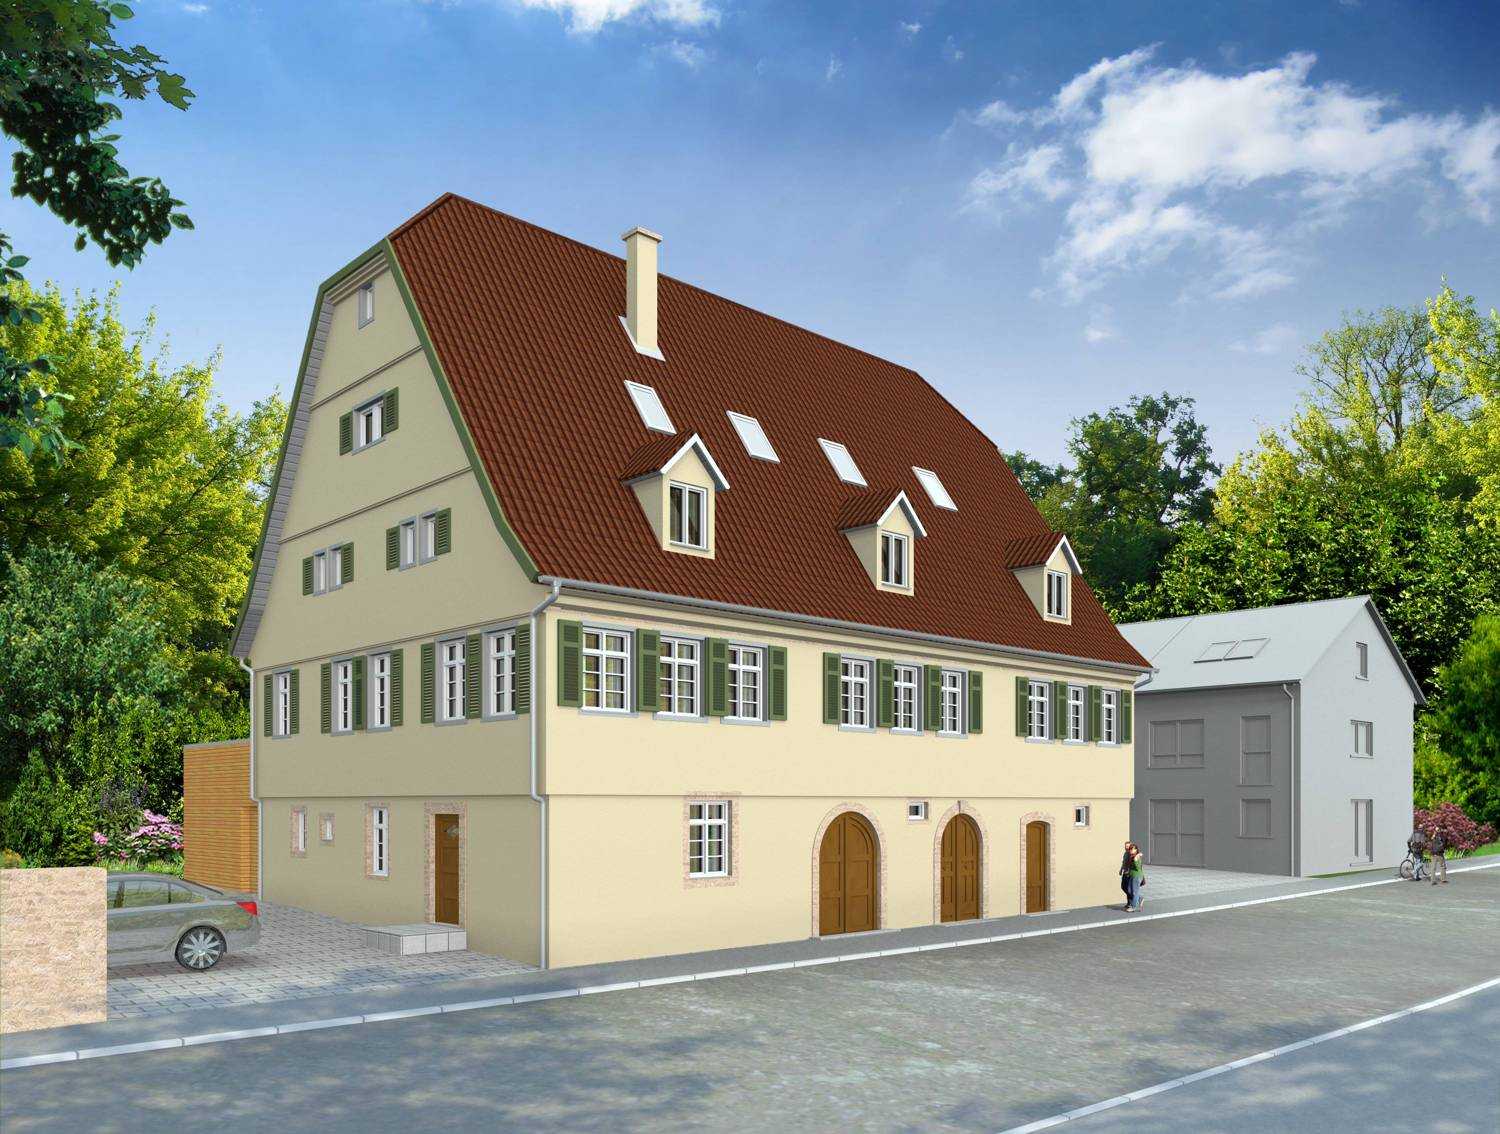 Architekturvisualisierung Umbau denkmalgeschützter Altbau in Darmsheimer Straße 2, Digelhof, 71069 Sindelfingen-Maichingen für r+s planen und bauen GmbH in 2014